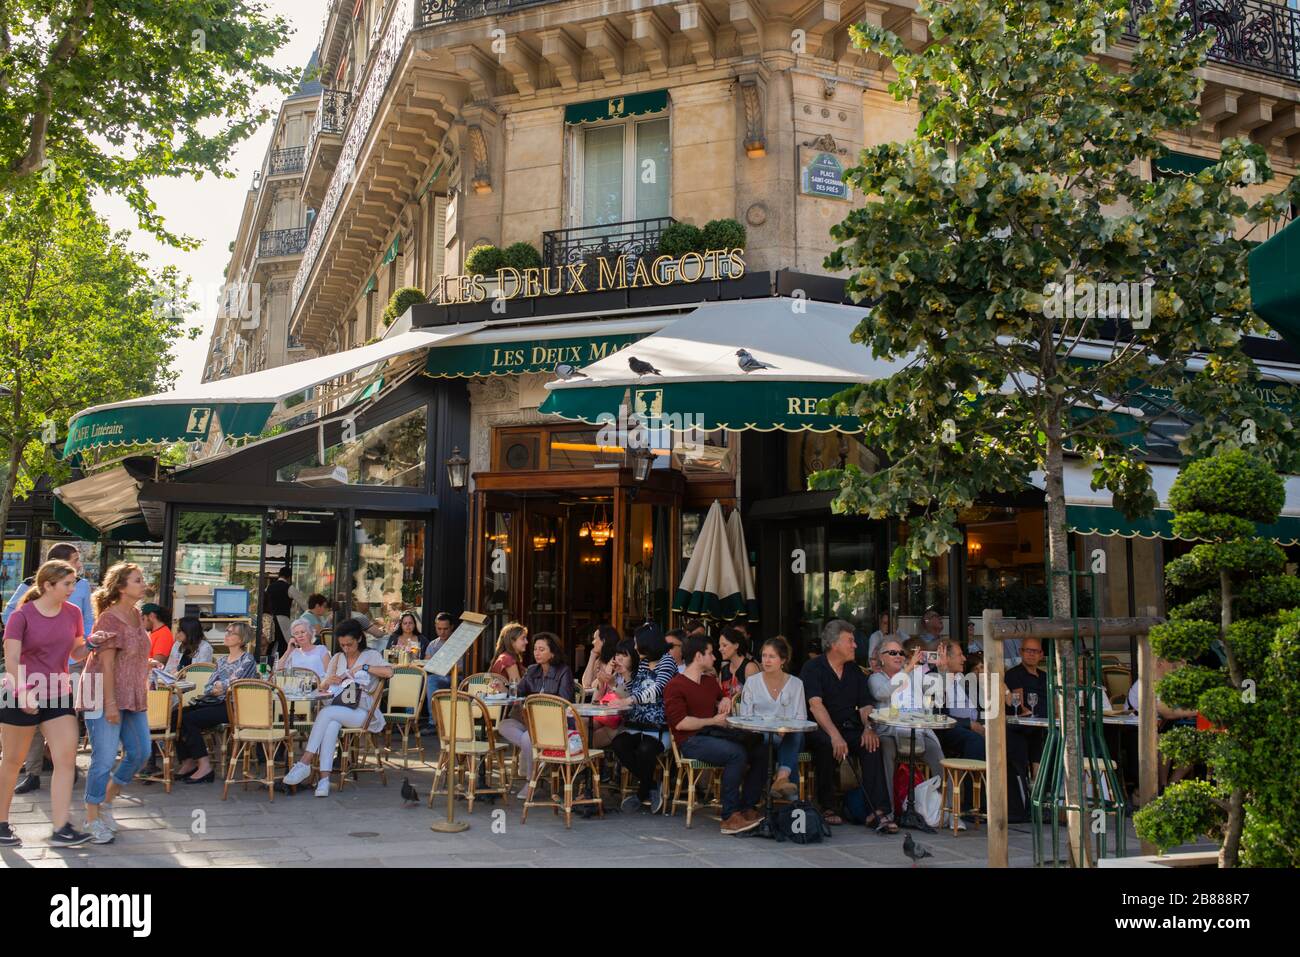 Das berühmte Café Les Deux magots im pariser Viertel Saint Germain des Pres, sonniger Sommertag in Paris. Leute, die draußen im französischen Café sitzen Stockfoto